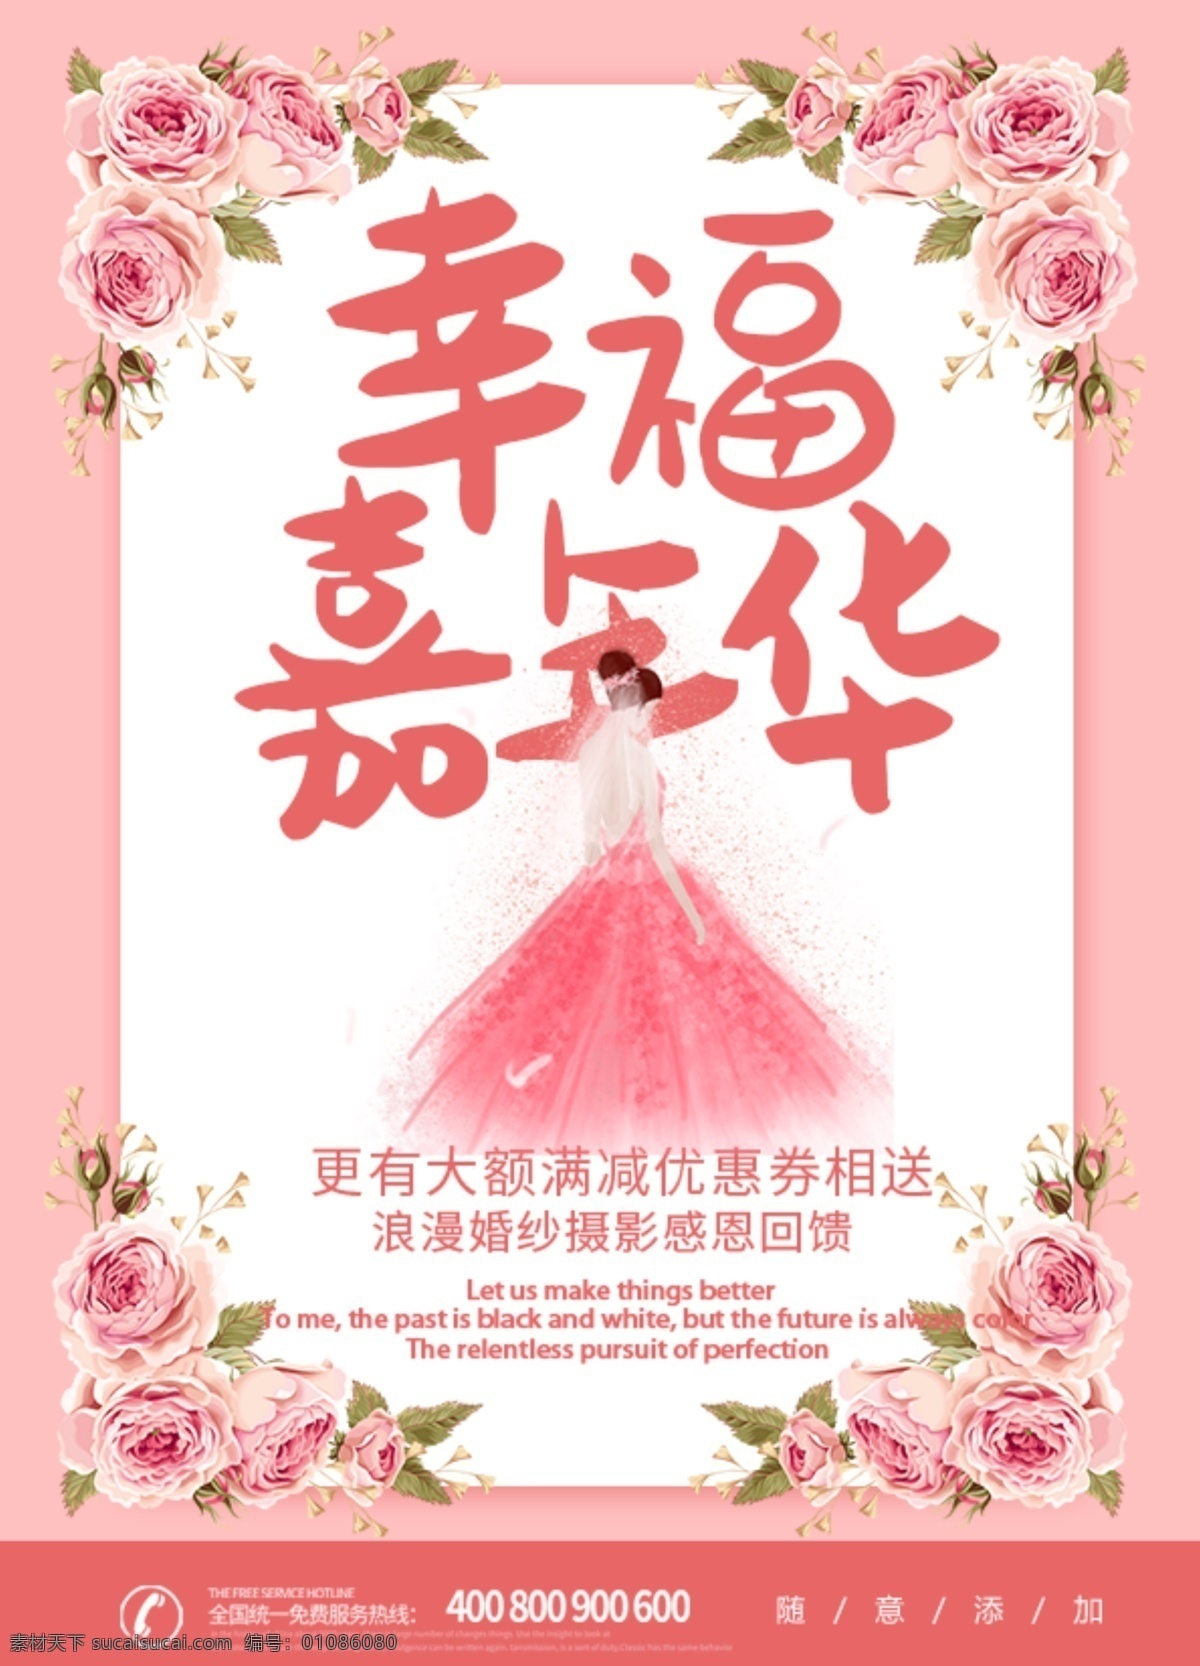 粉色 花朵 唯美 浪漫婚礼 宣传单 dm 浪漫 婚礼